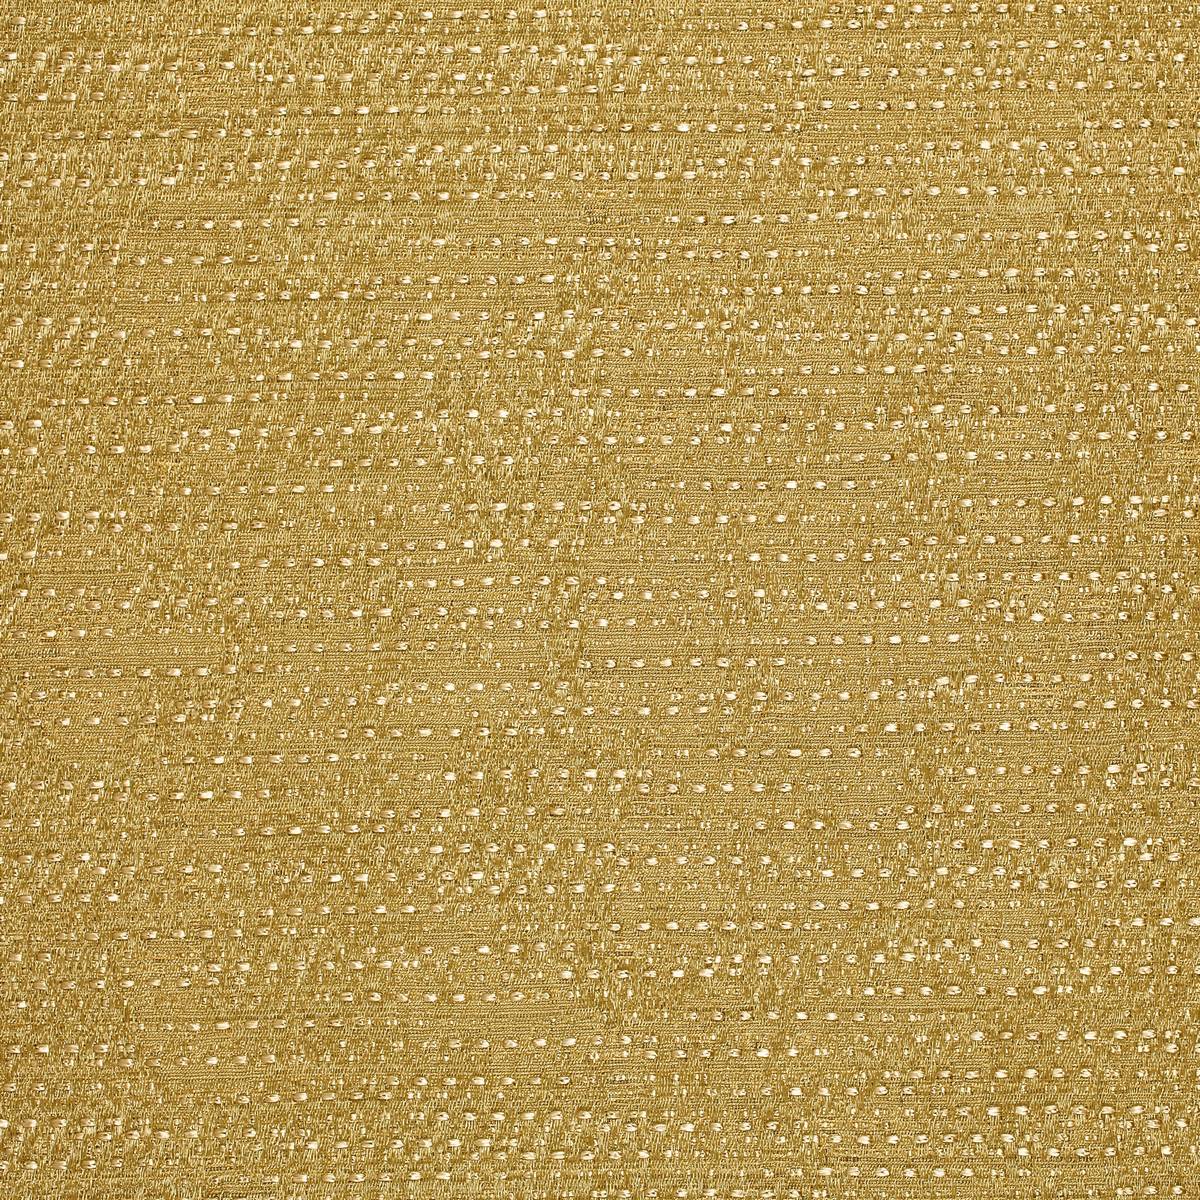 Peruzzi Gold Fabric by Zoffany